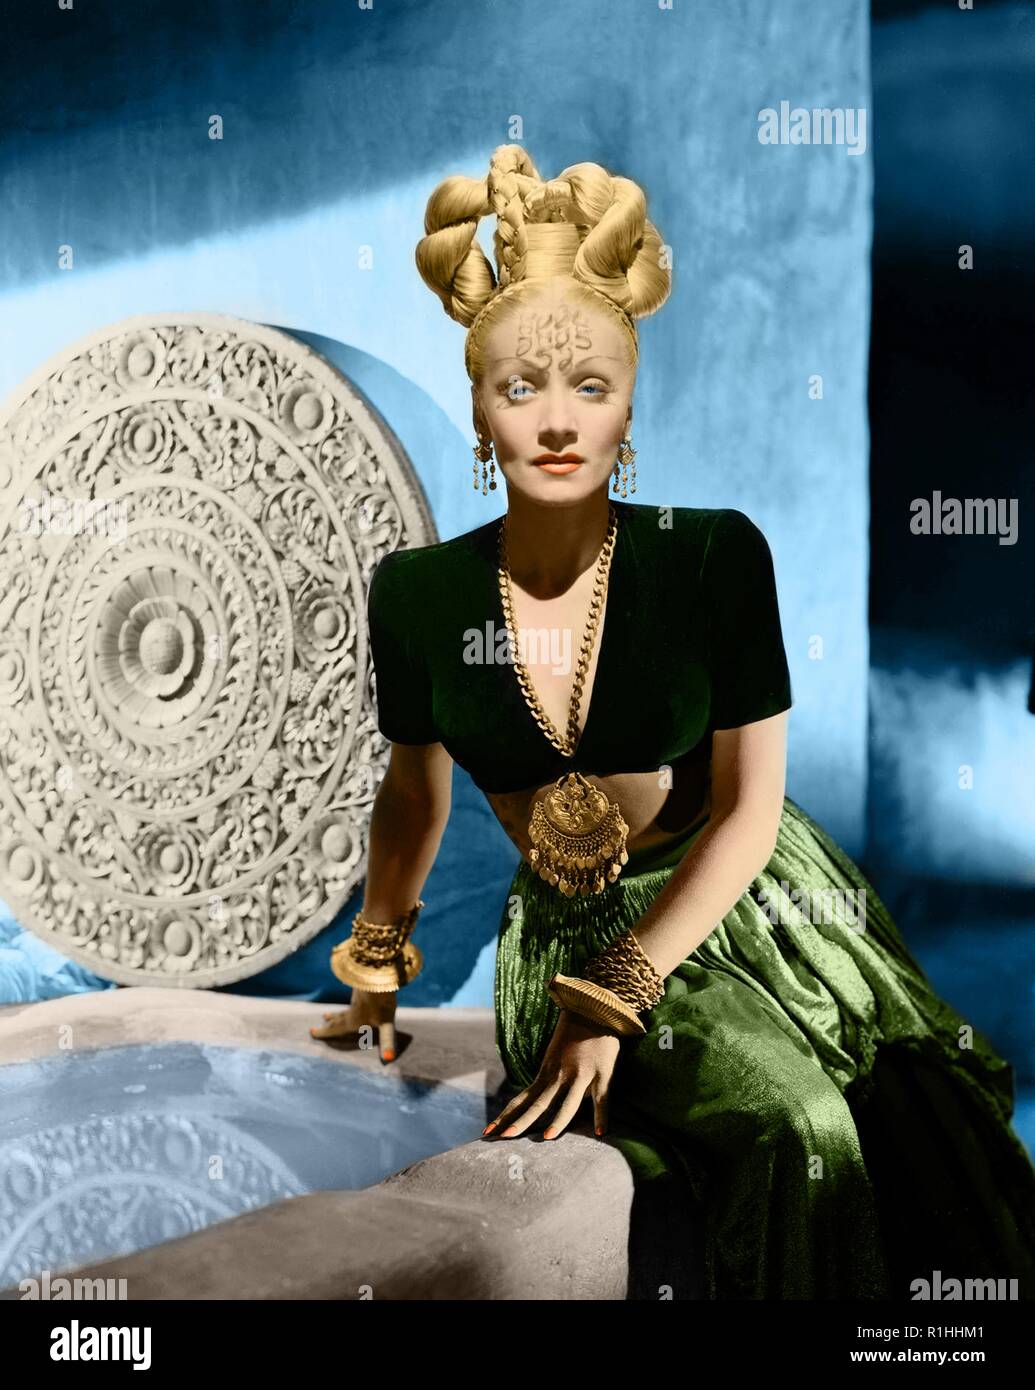 Dans les années 1920, Berlin, Dietrich a agi sur la scène et dans les films muets. Son rendement comme Lola-Lola dans l'Ange Bleu (1930) l'amena une renommée internationale et d'un contrat avec Paramount Pictures. Dietrich a joué dans des films hollywoodiens tels que le Maroc (1930), Shanghai Express (1932), et le désir (1936). Elle a échangé sur sa persona et glamour ressemble 'exotiques', et est devenue l'une des actrices les mieux payés de l'époque. Tout au long de la Seconde Guerre mondiale, elle était une artiste très en vue aux États-Unis. Bien qu'elle fait encore quelques films après la guerre, Dietrich a passé la plupart des années 50 à la 1 Banque D'Images